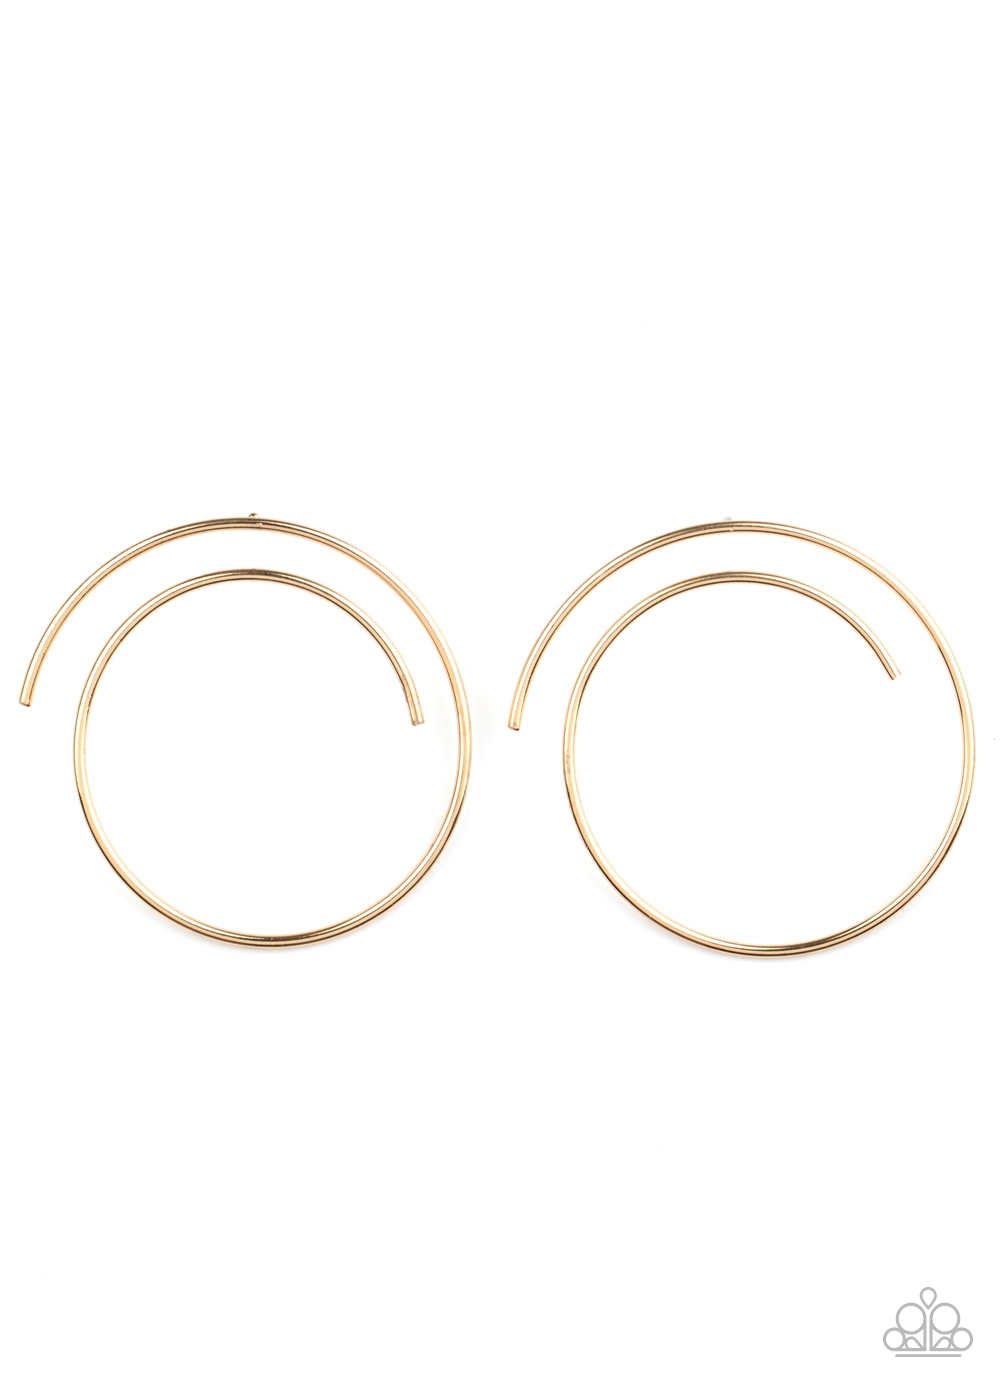 Earring - Vogue Vortex - Gold